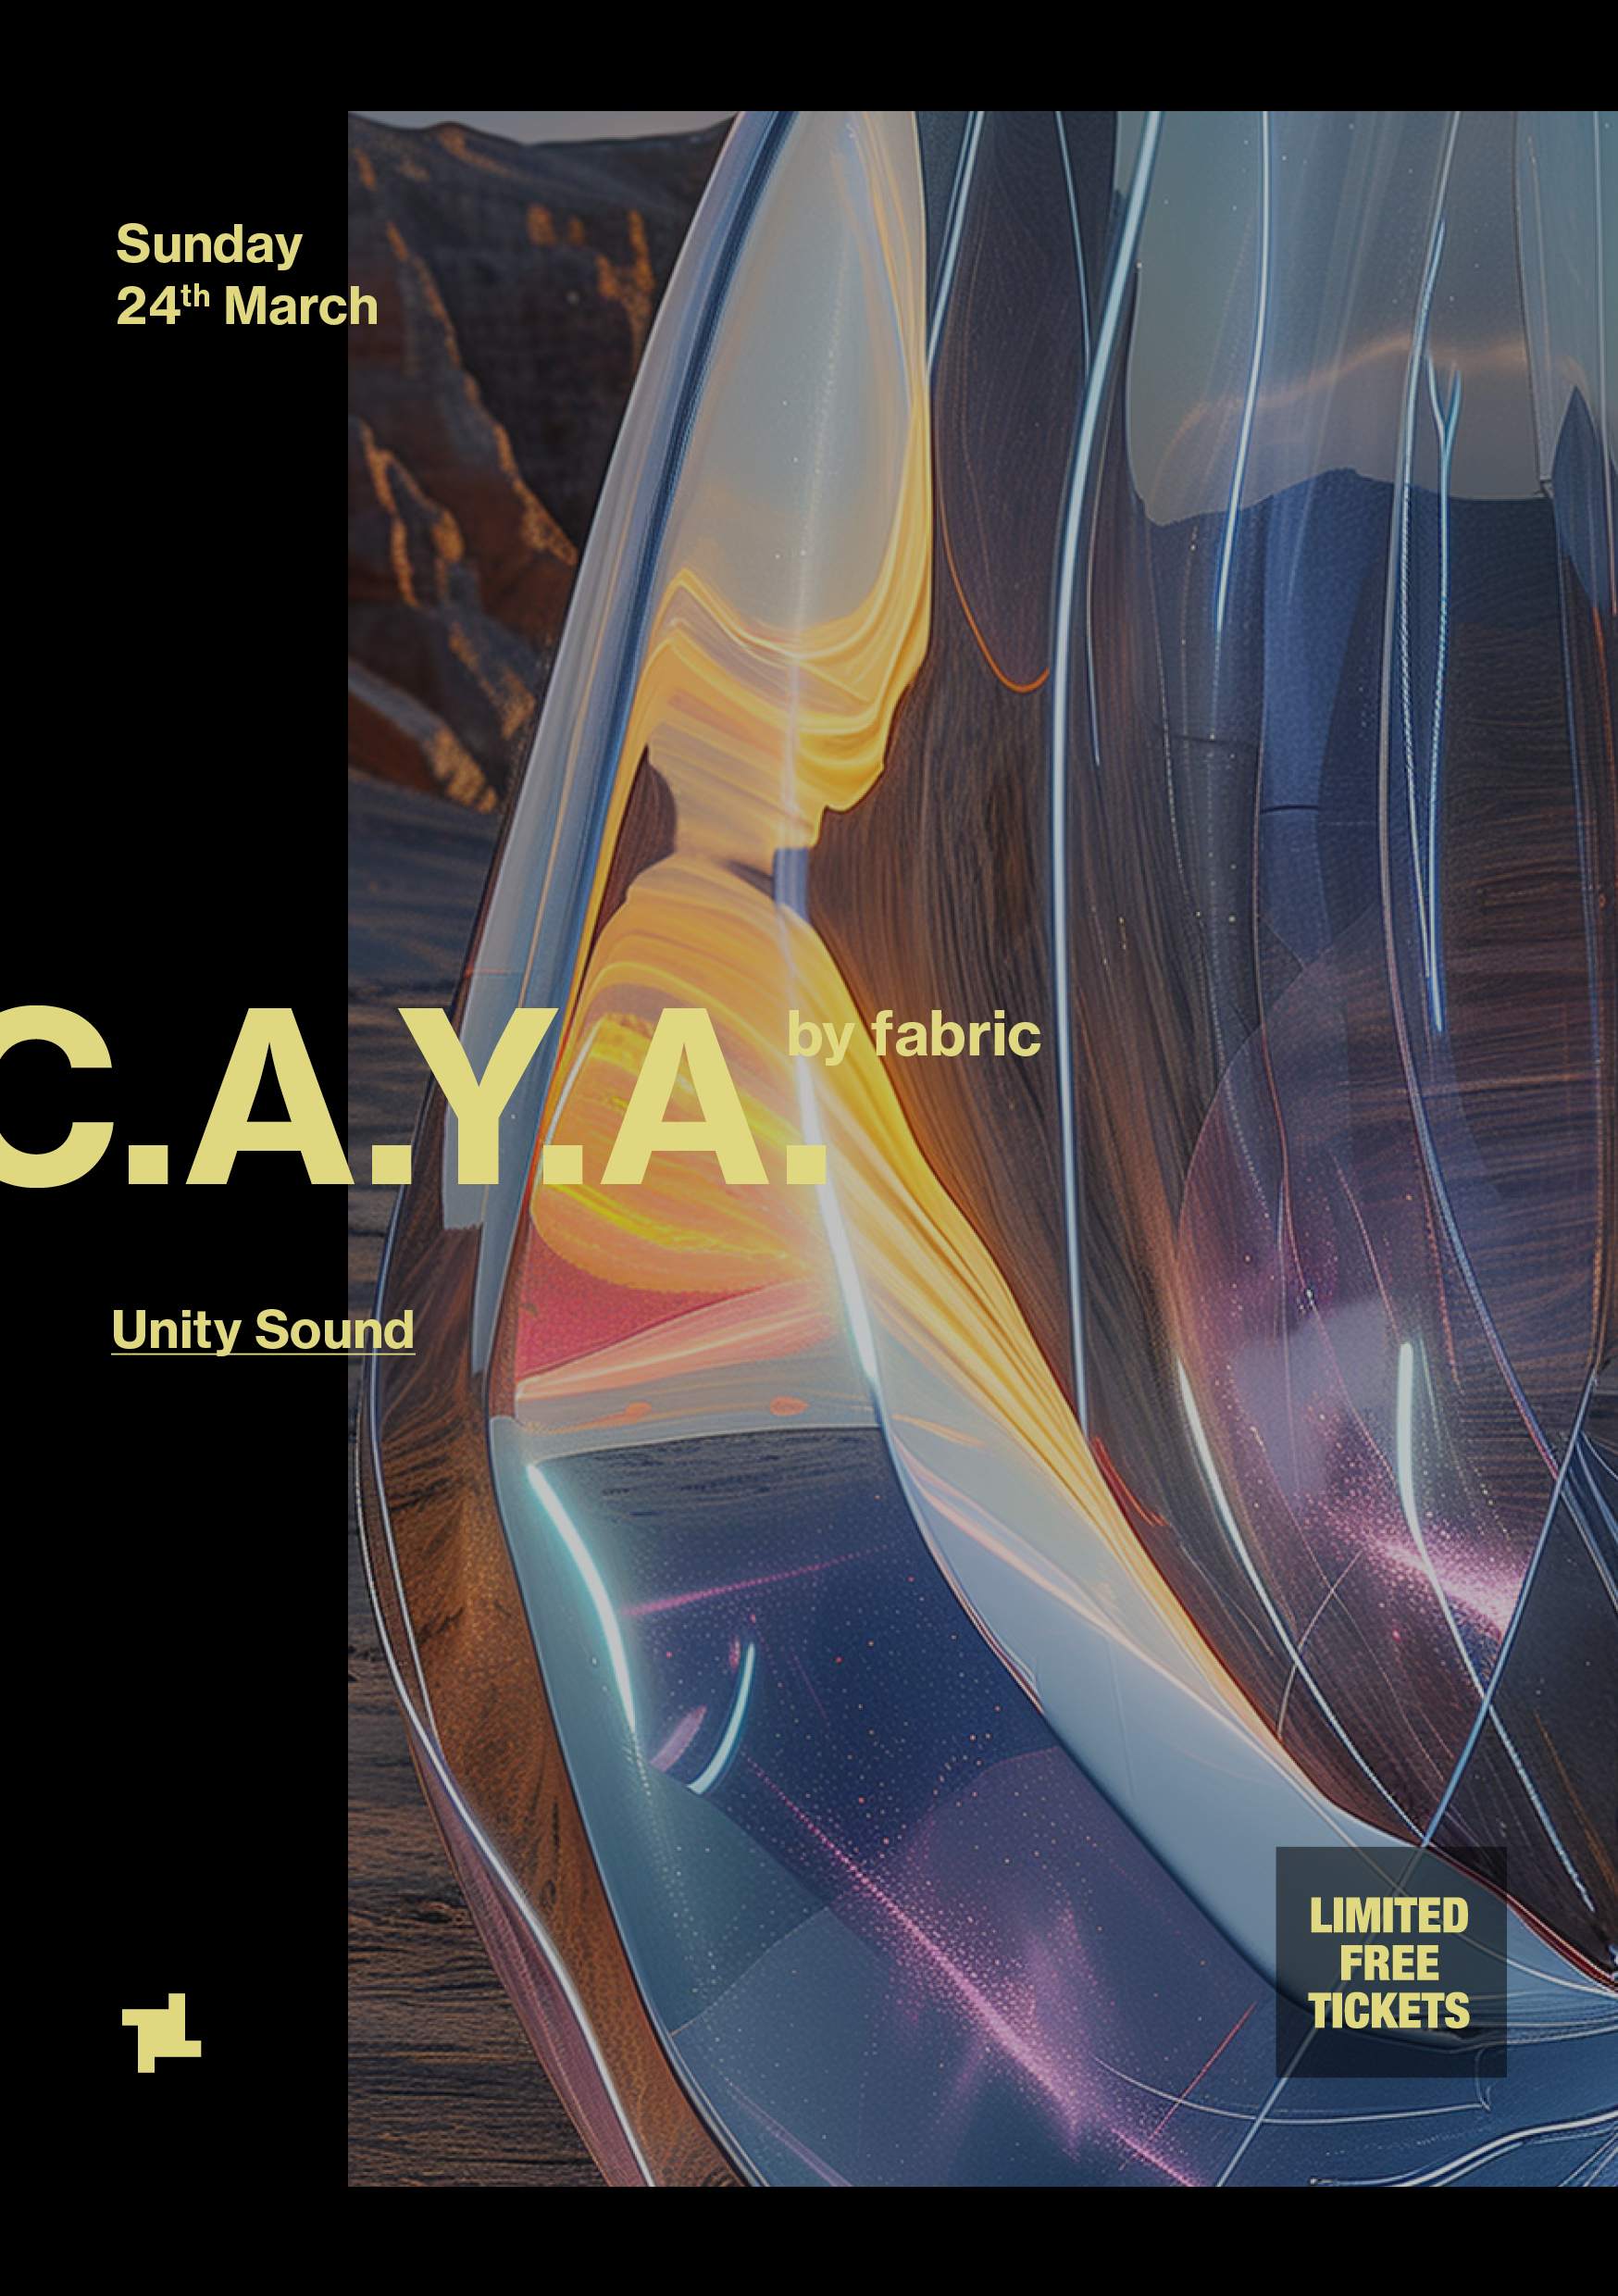 C.A.Y.A. by fabric: Unity Sound - Página frontal